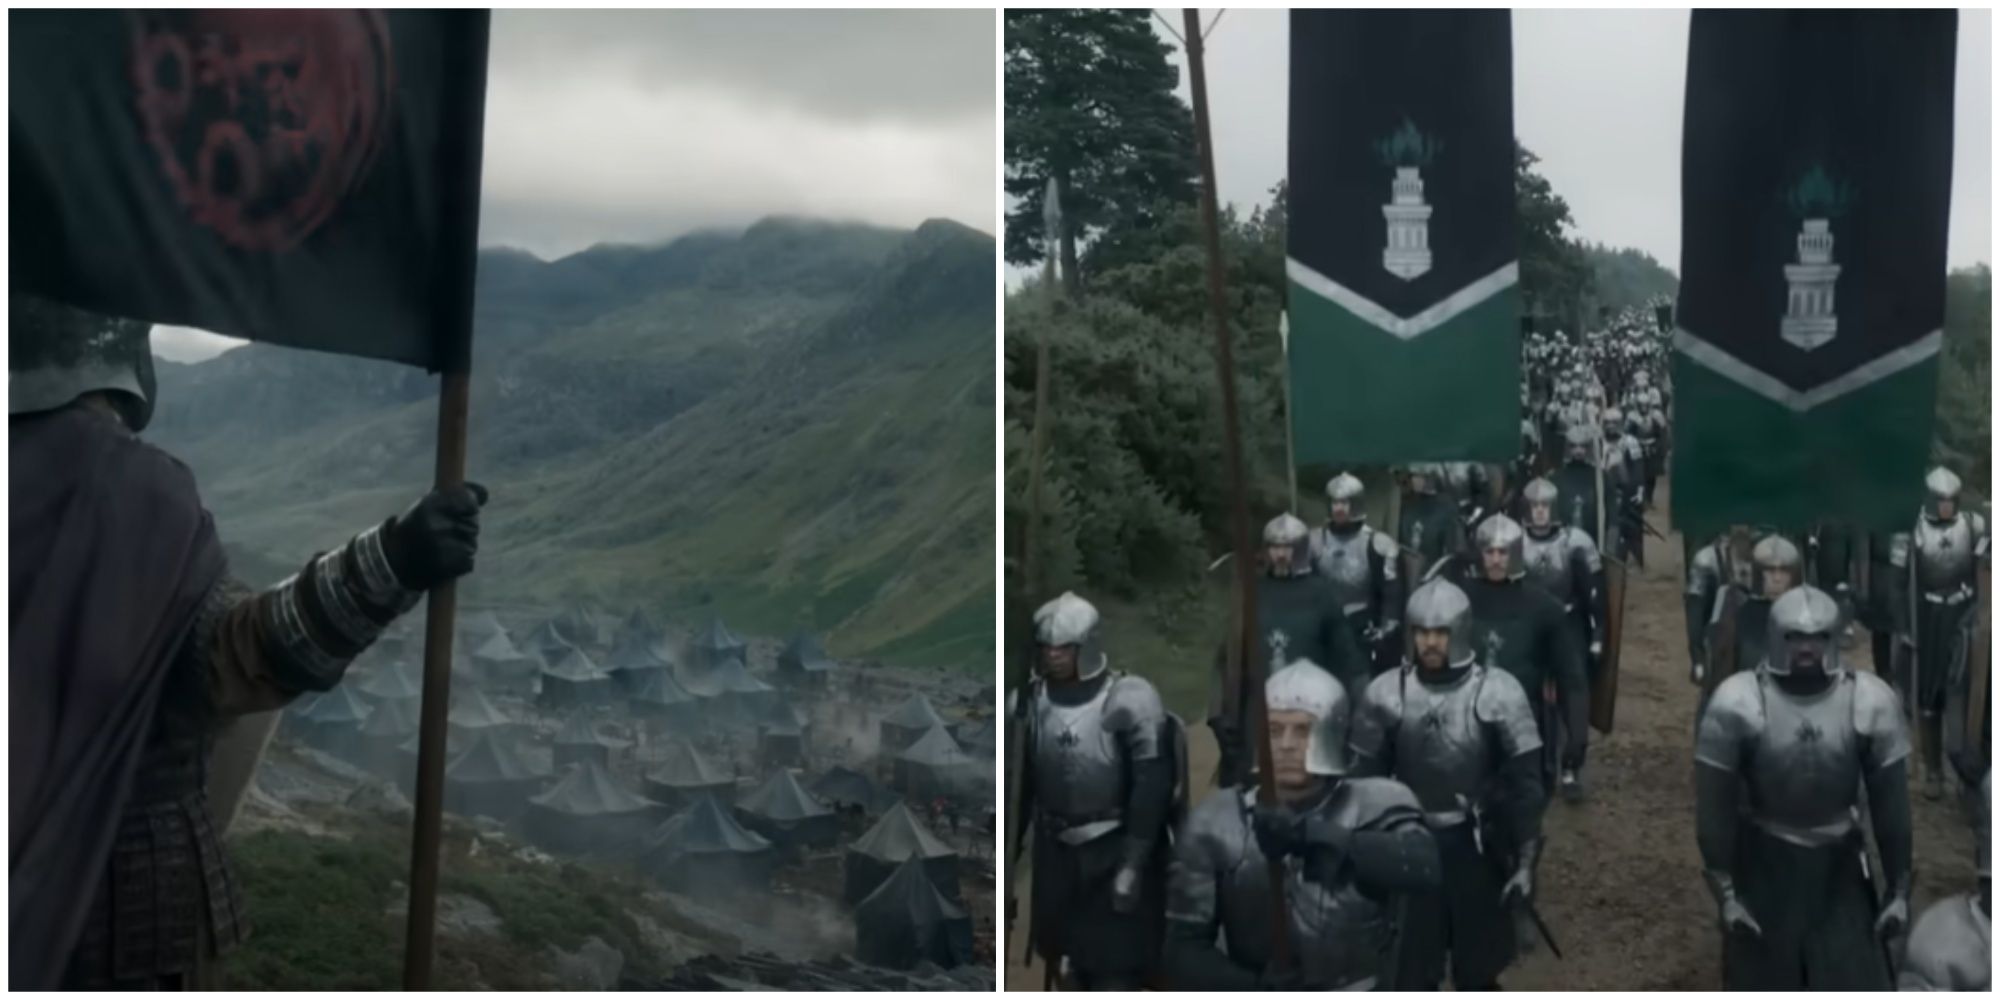 Split image of the Targaryen encampment and Hightower banners in House of the Dragon season 2 teaser trailer.